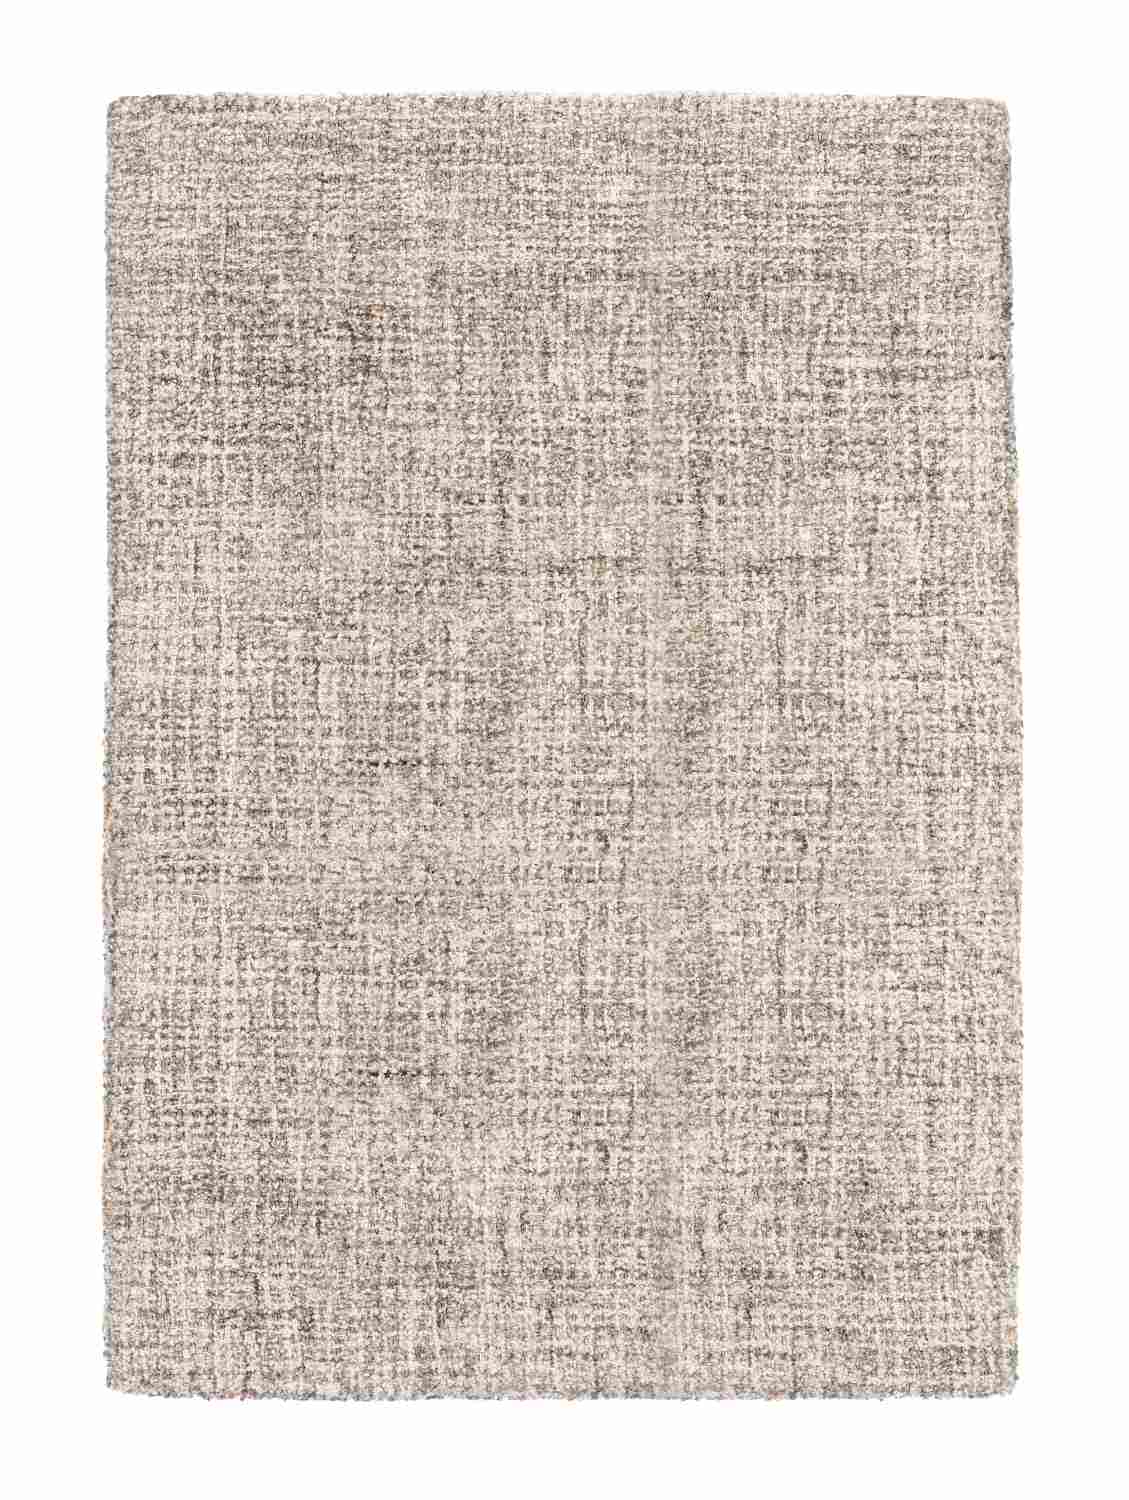 Der Teppich Hansi überzeugt mit seinem klassischen Design. Gefertigt wurde die Vorderseite aus 70% Polyester und 30% Wolle, die Rückseite ist aus Baumwolle. Der Teppich besitzt eine Beige Farbton und die Maße von 140x200 cm.